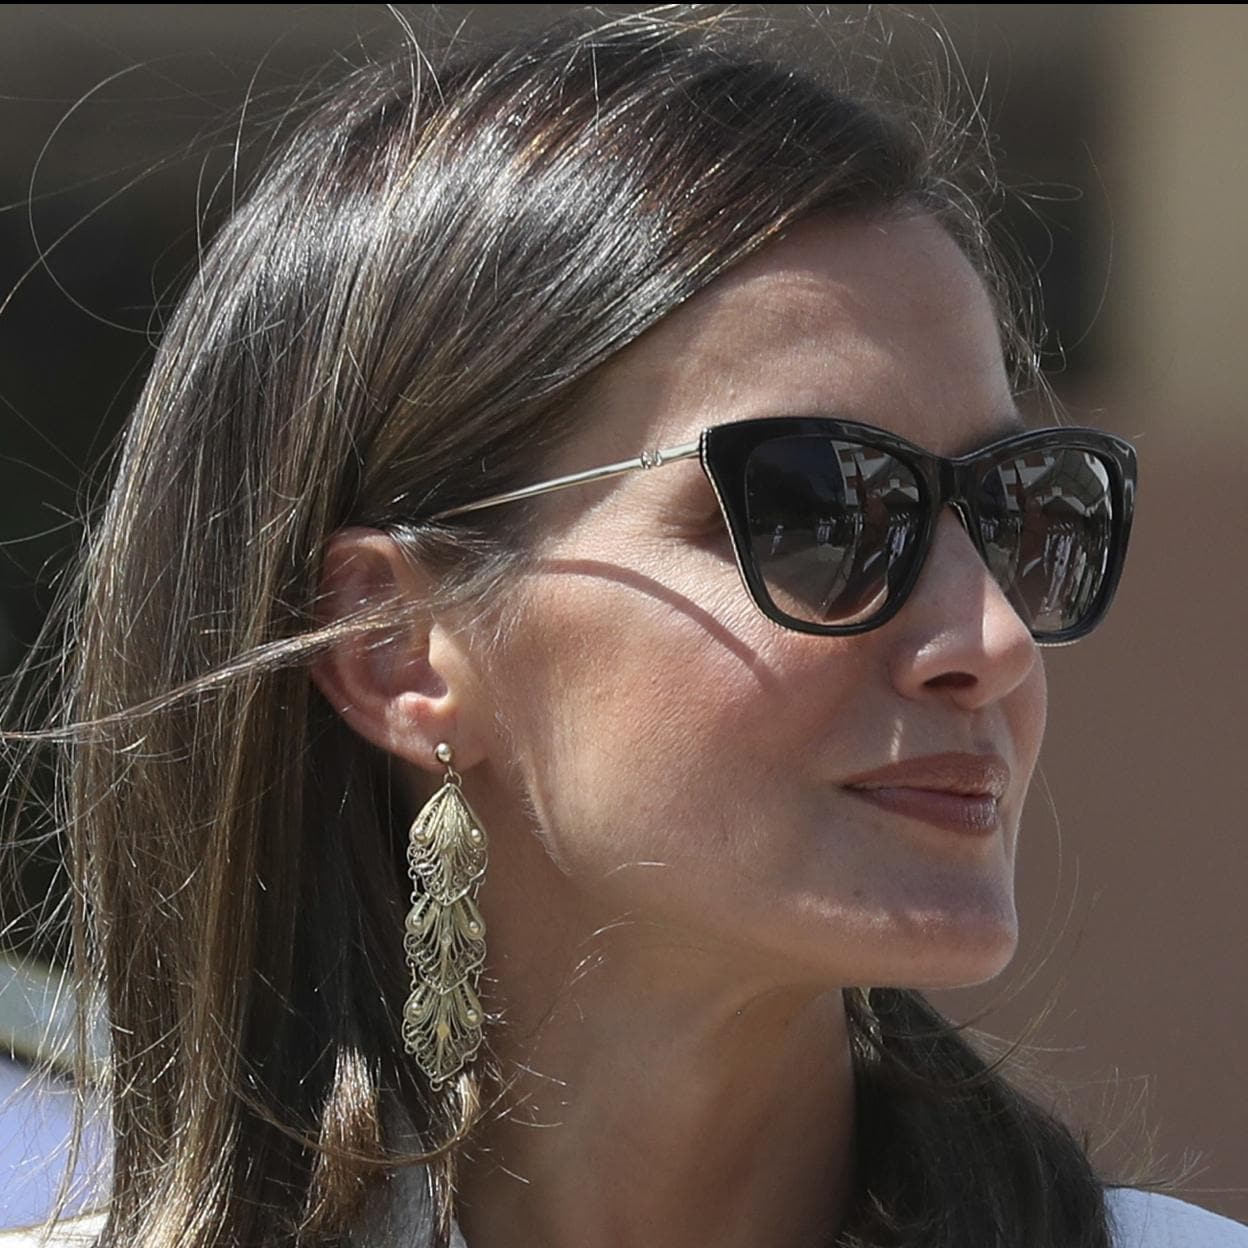 Las gafas de sol de la Reina Letizia: estos son sus modelos favoritos (y su  versión low cost)